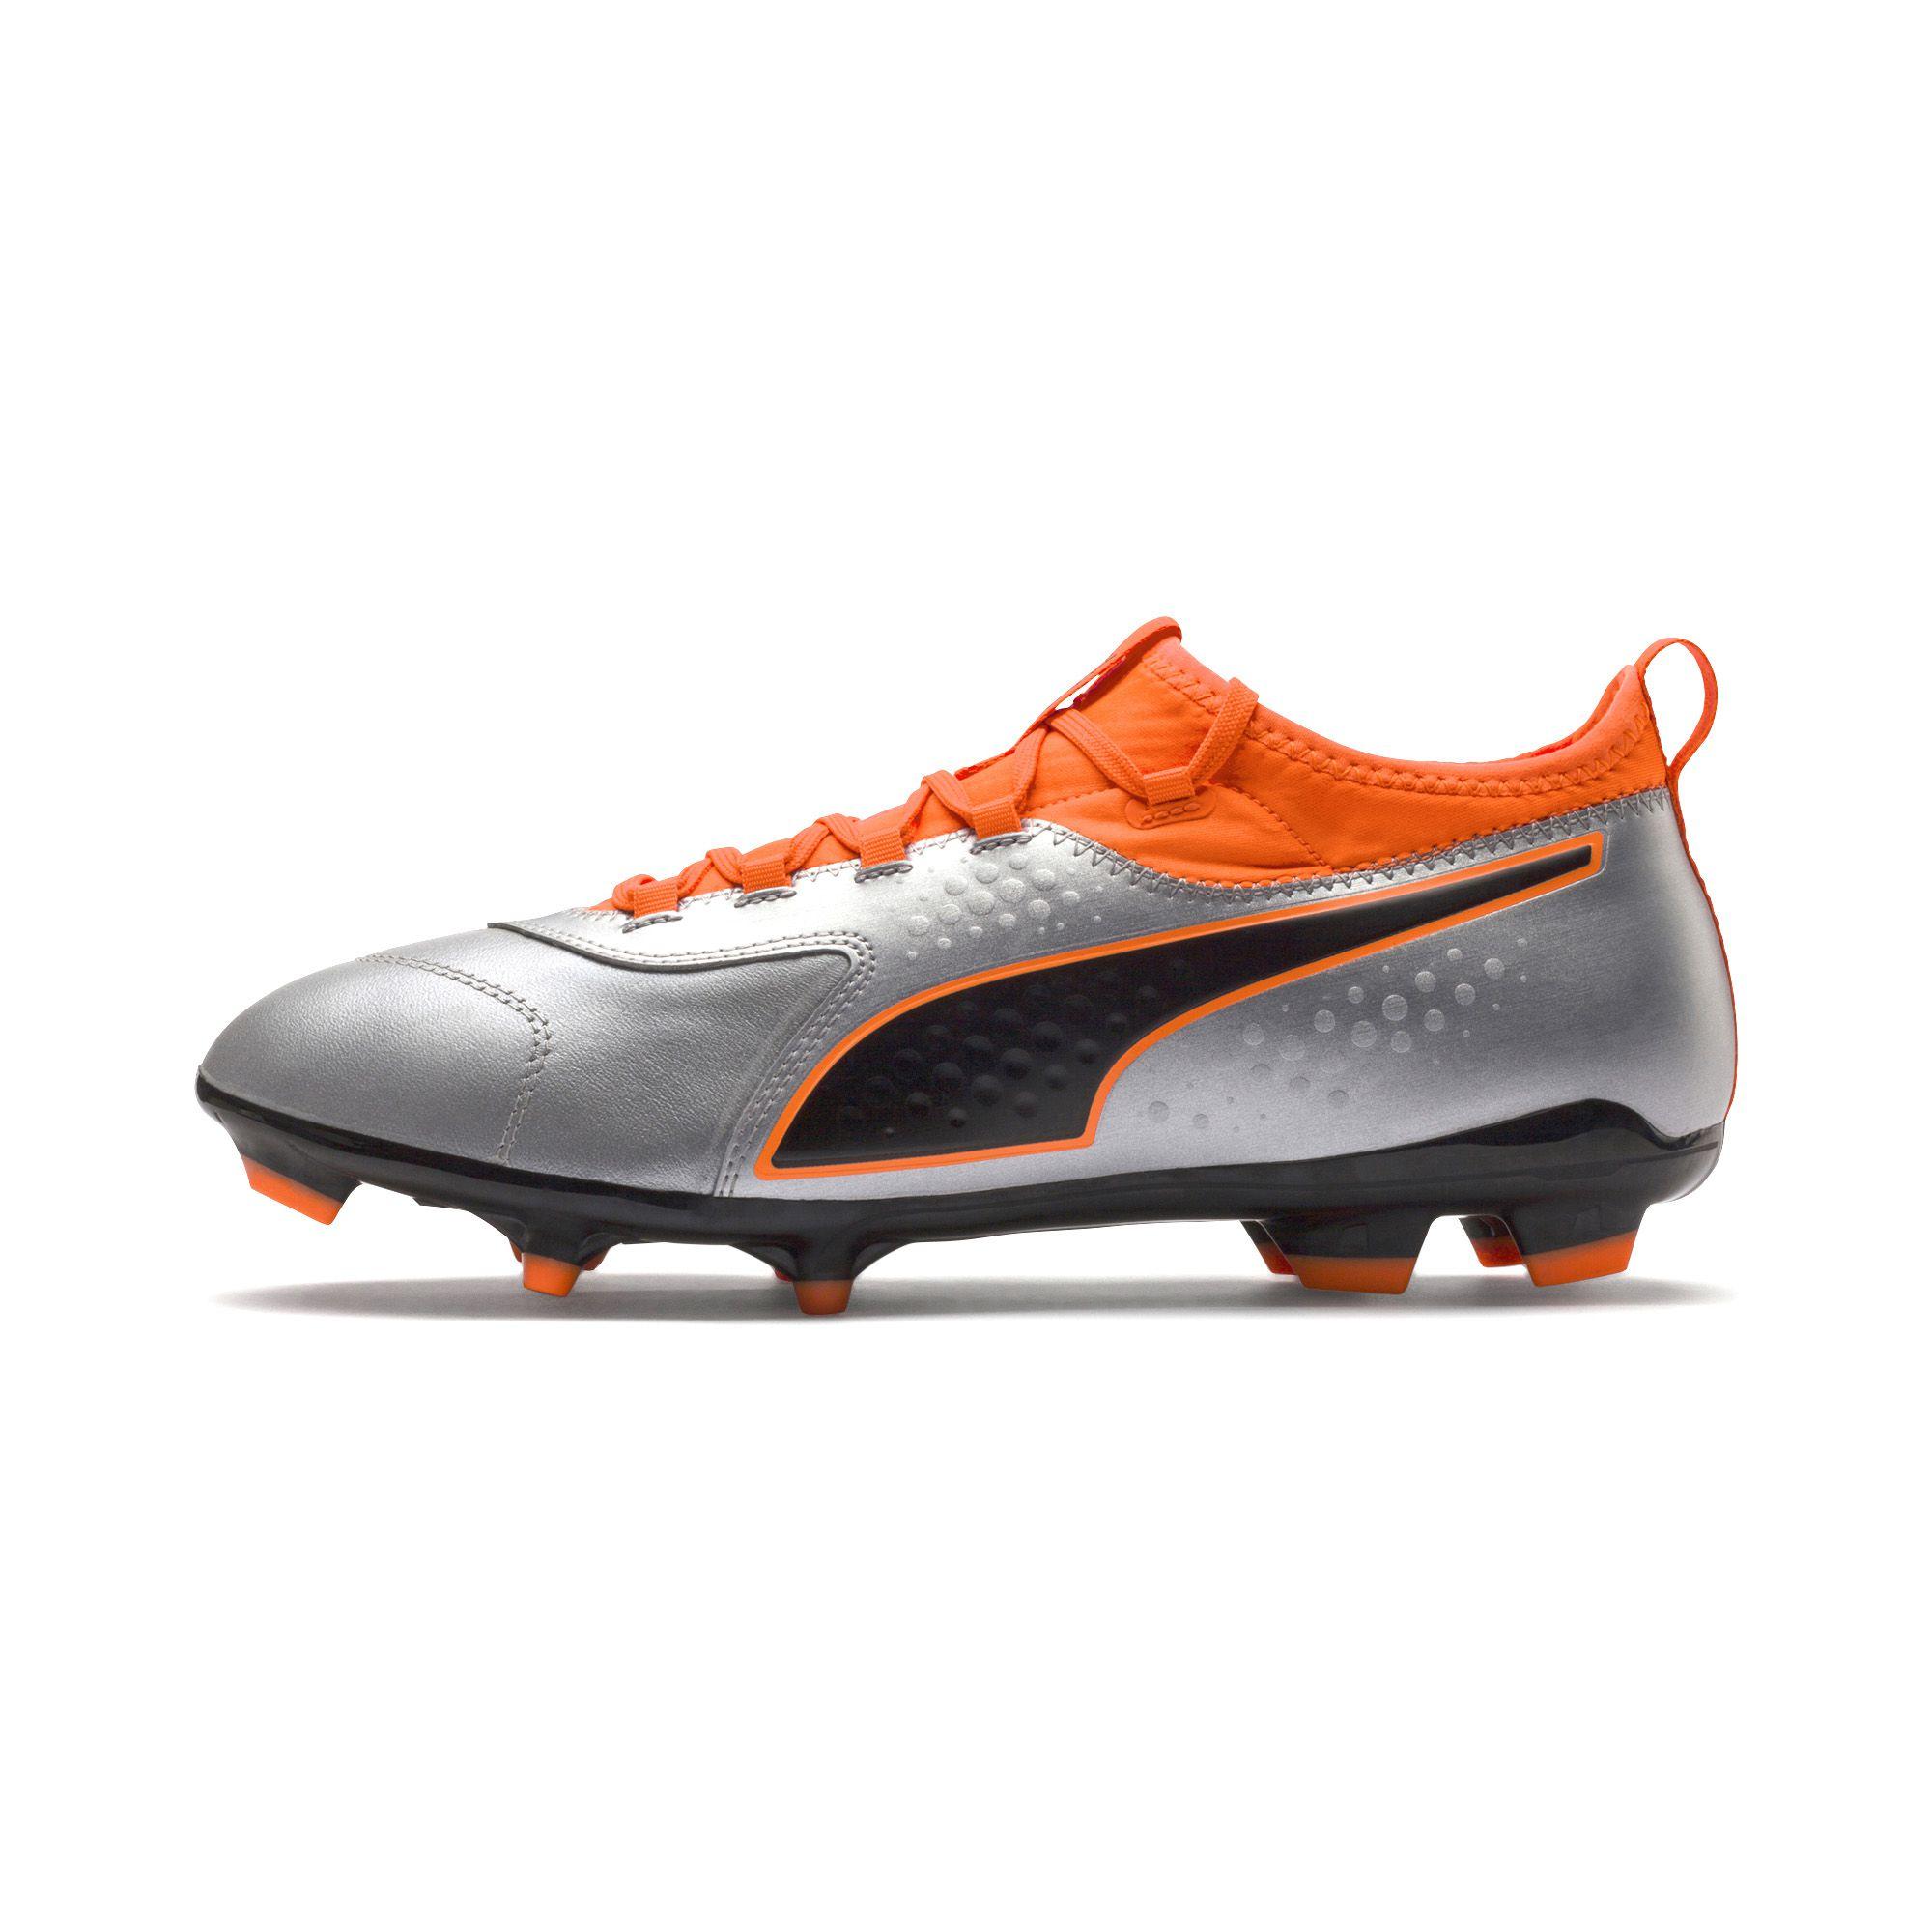 Puma Football Shoes One 3 Lth Fg